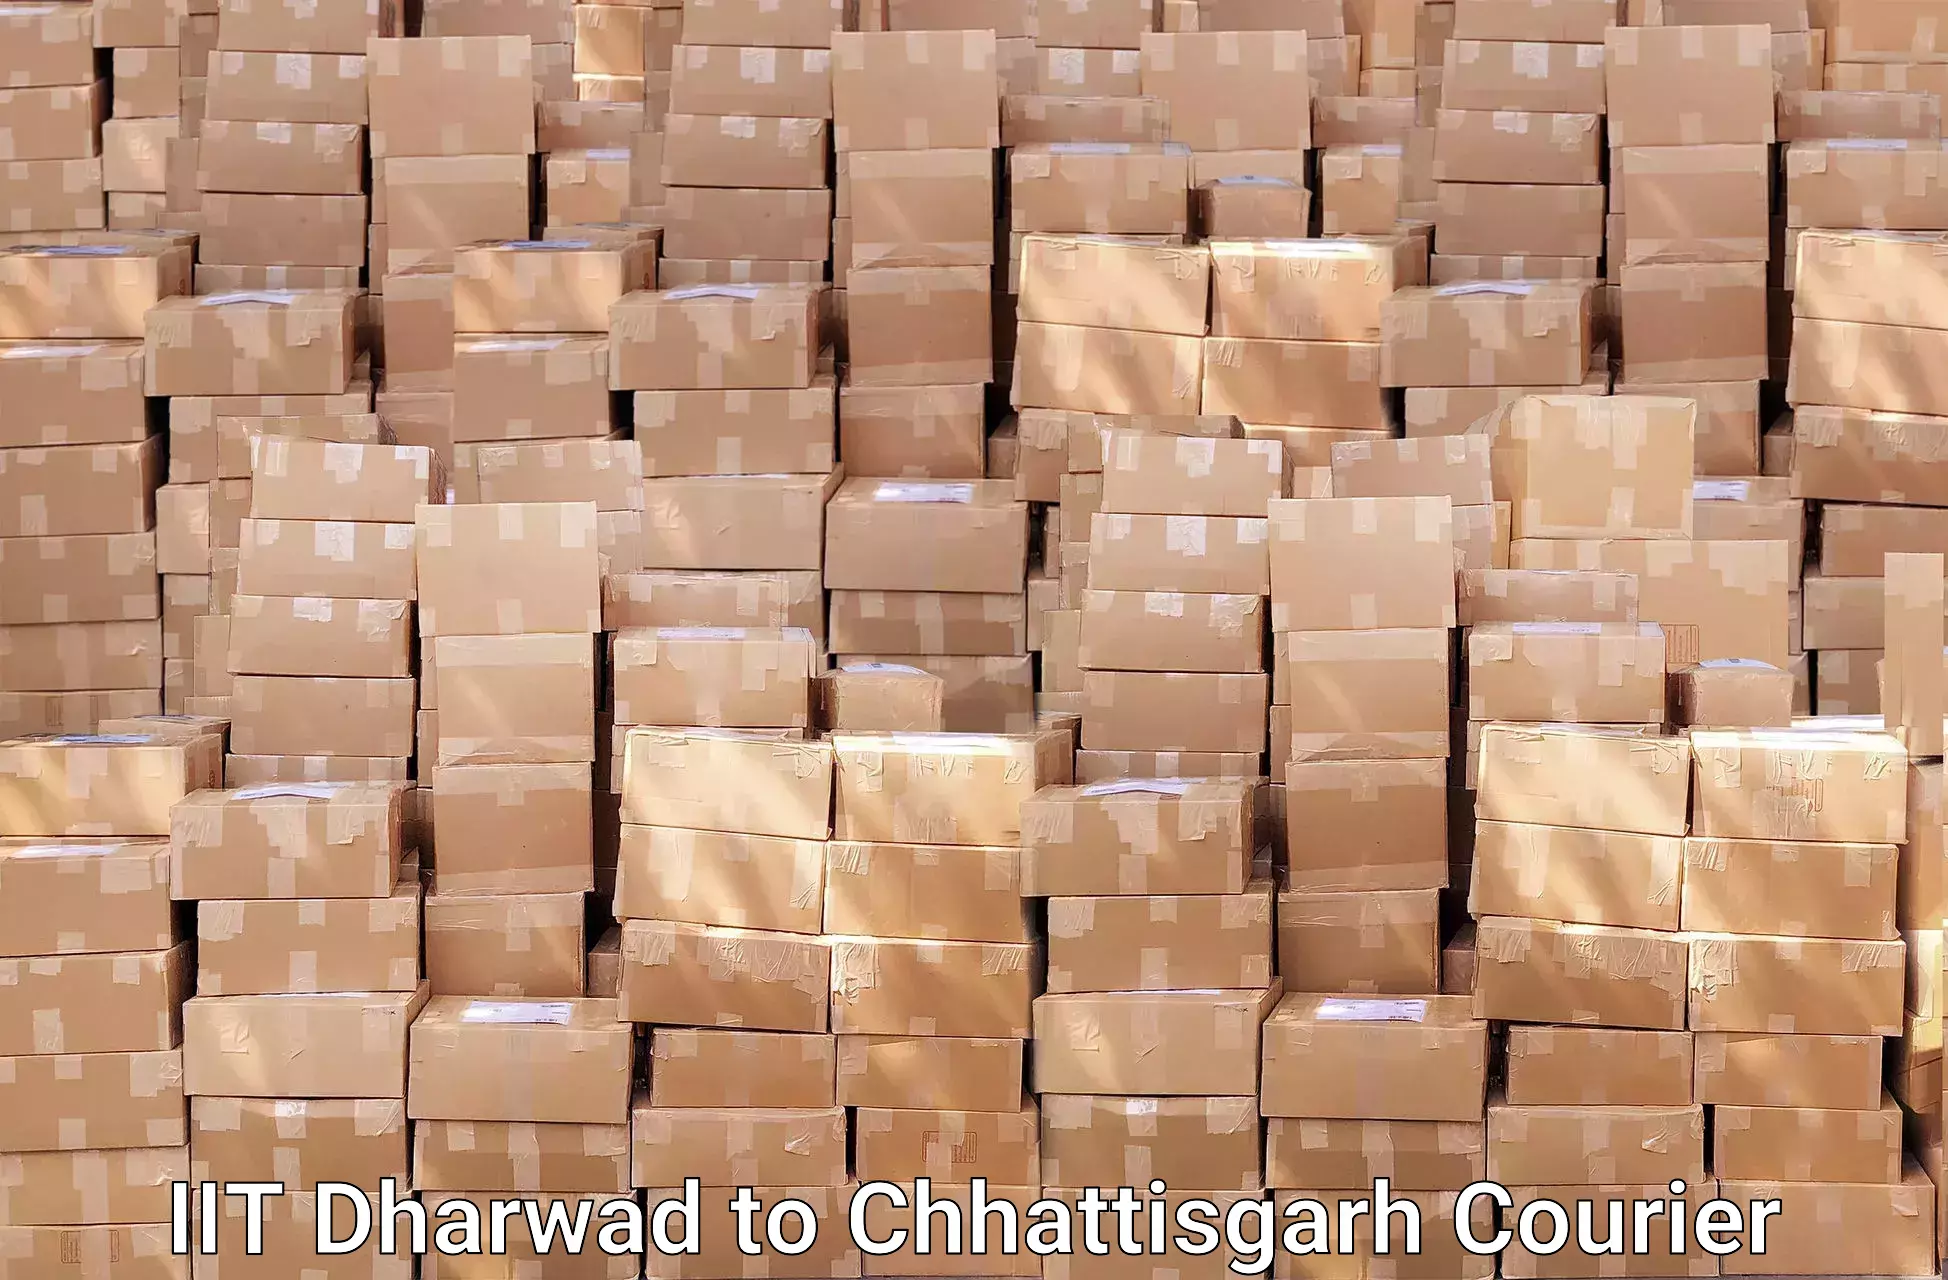 Furniture delivery service IIT Dharwad to Wadrafnagar